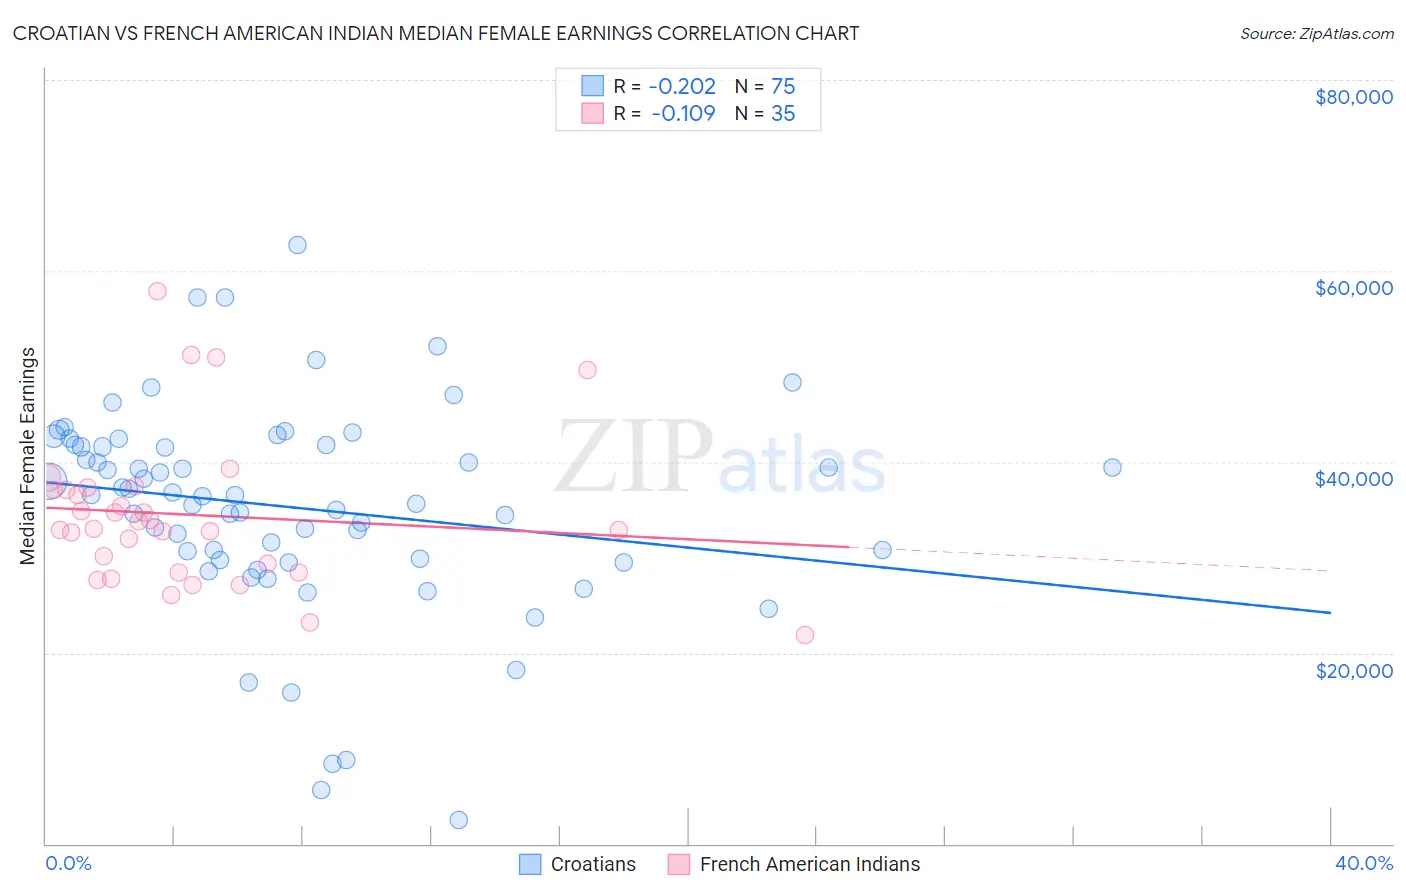 Croatian vs French American Indian Median Female Earnings